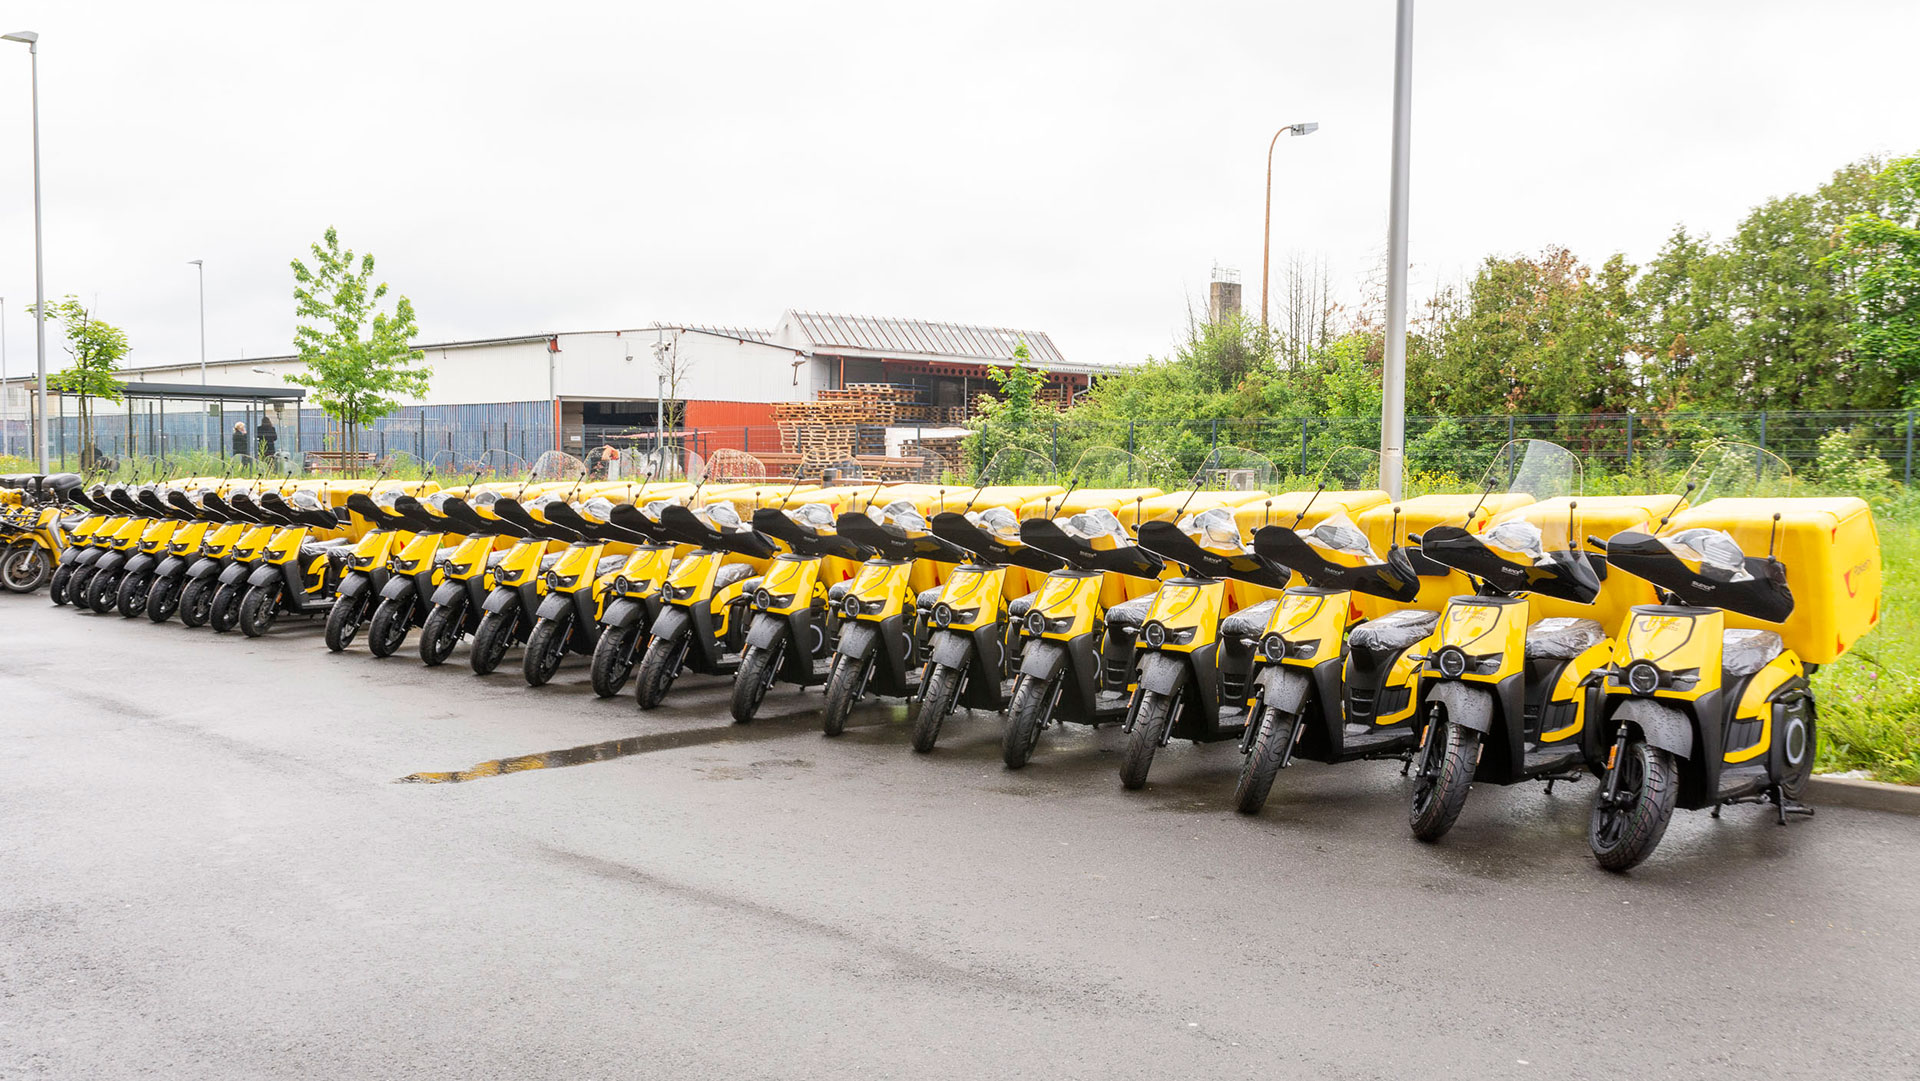 El servicio de correos de Croacia empleará motos Silence para el reparto de última milla